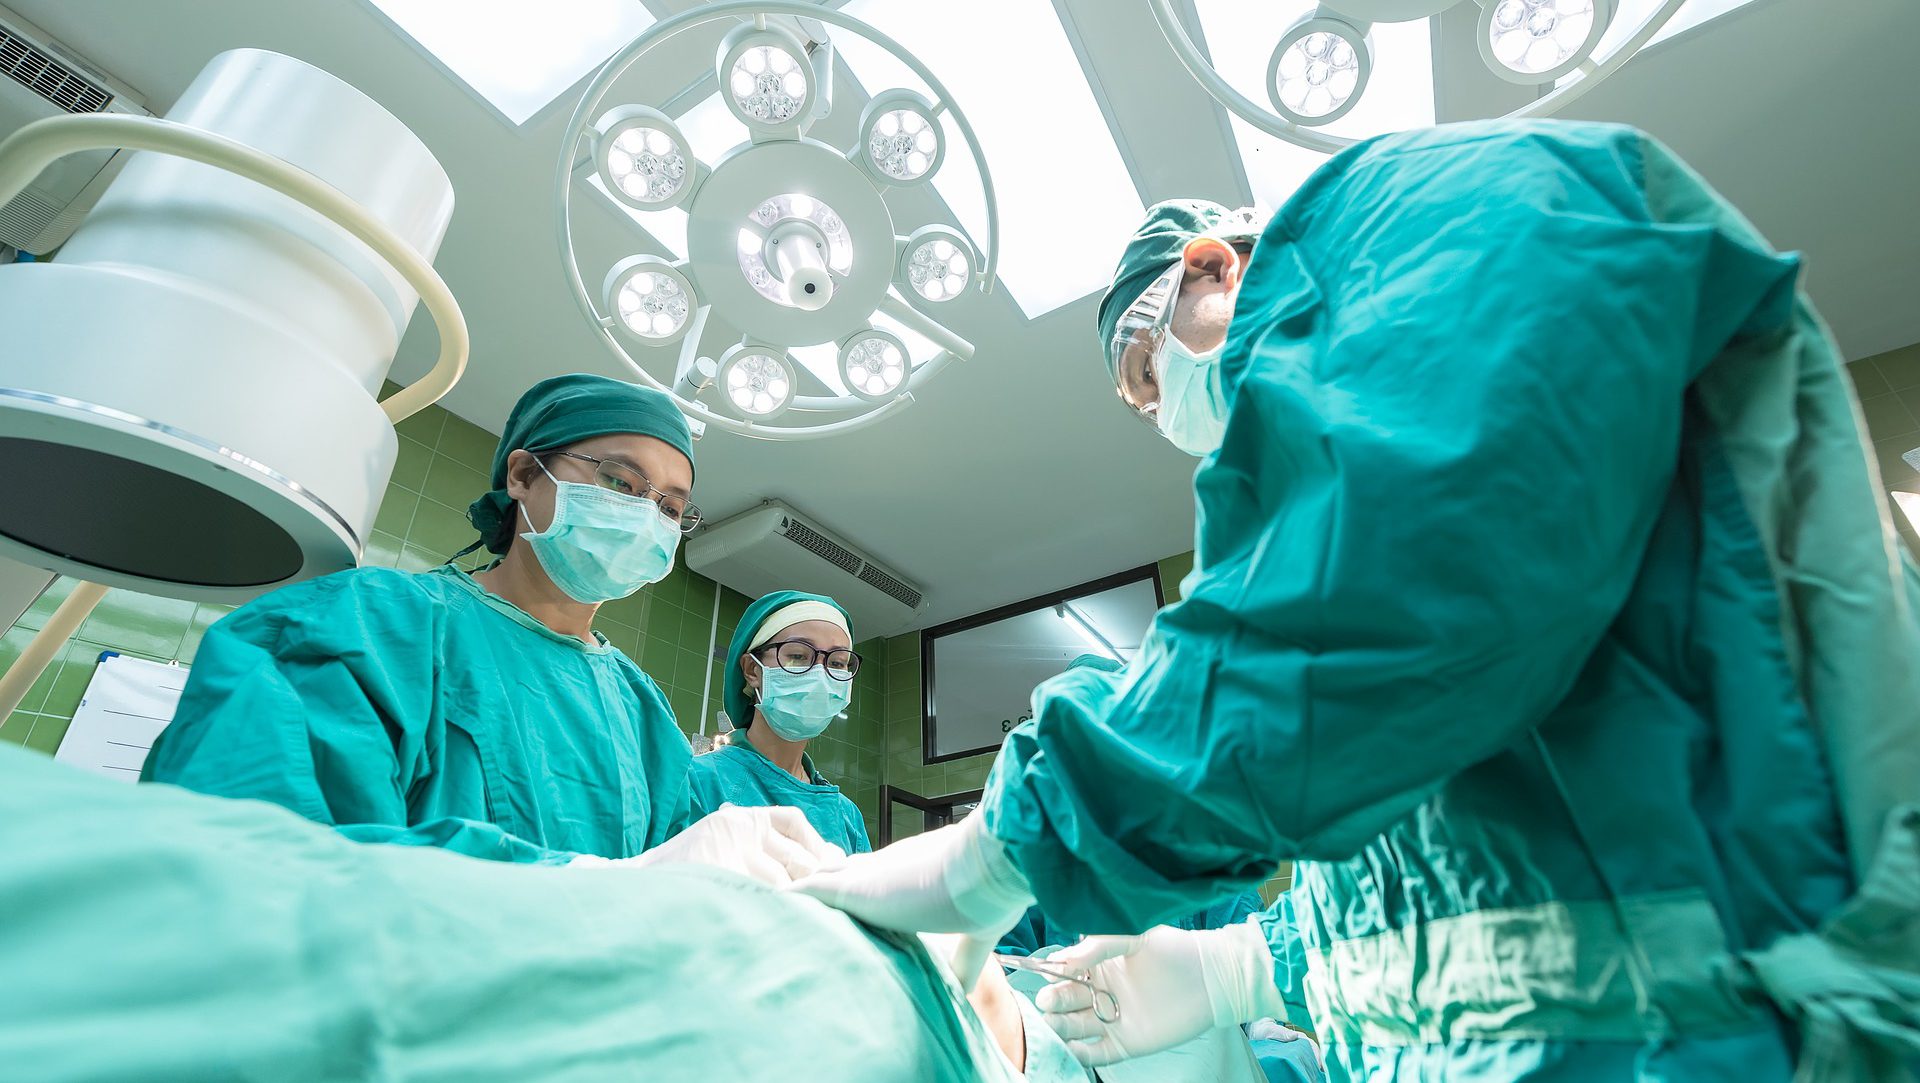 Polskie urządzenie zminimalizuje ryzyko podczas operacji kardiochirurgicznych